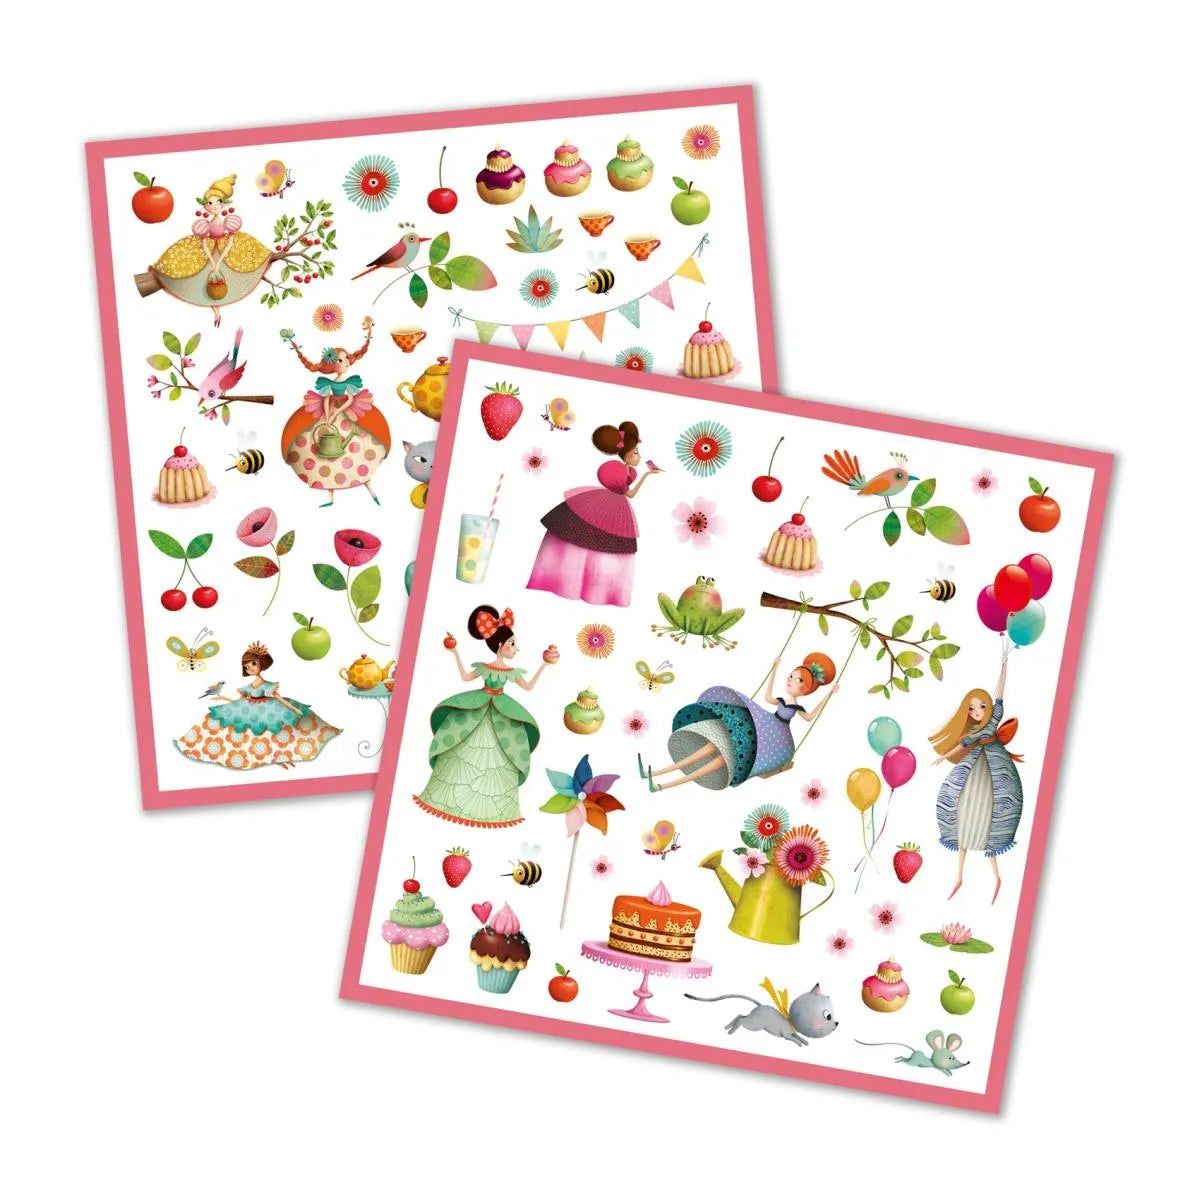 Sticker: Prinzessinnen Tee Party - 160 Sticker